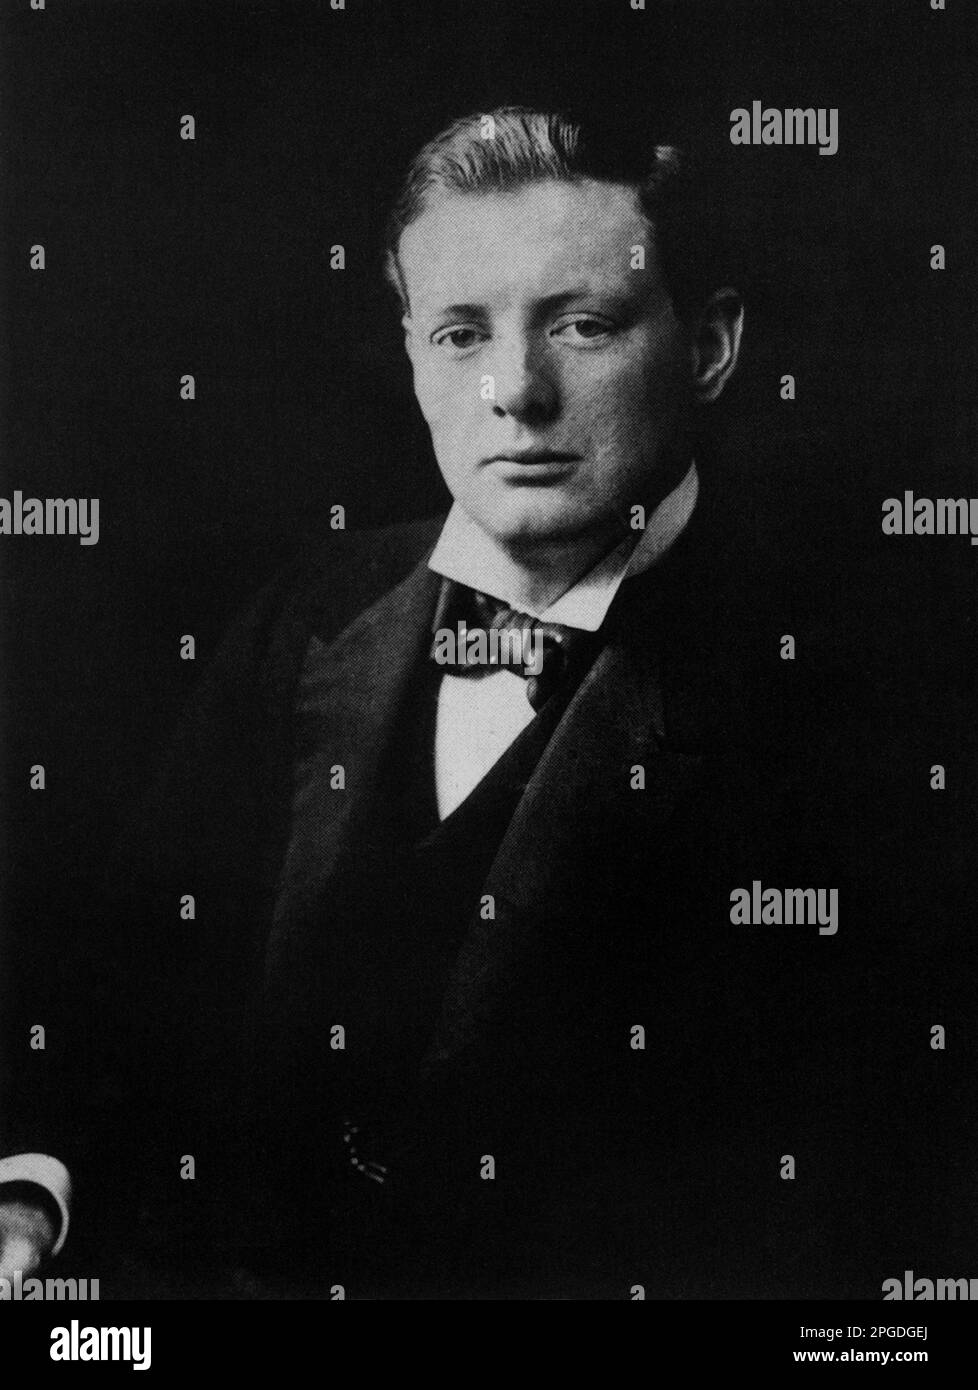 Porträtfoto von Winston Churchill, aufgenommen 1900 Stockfoto